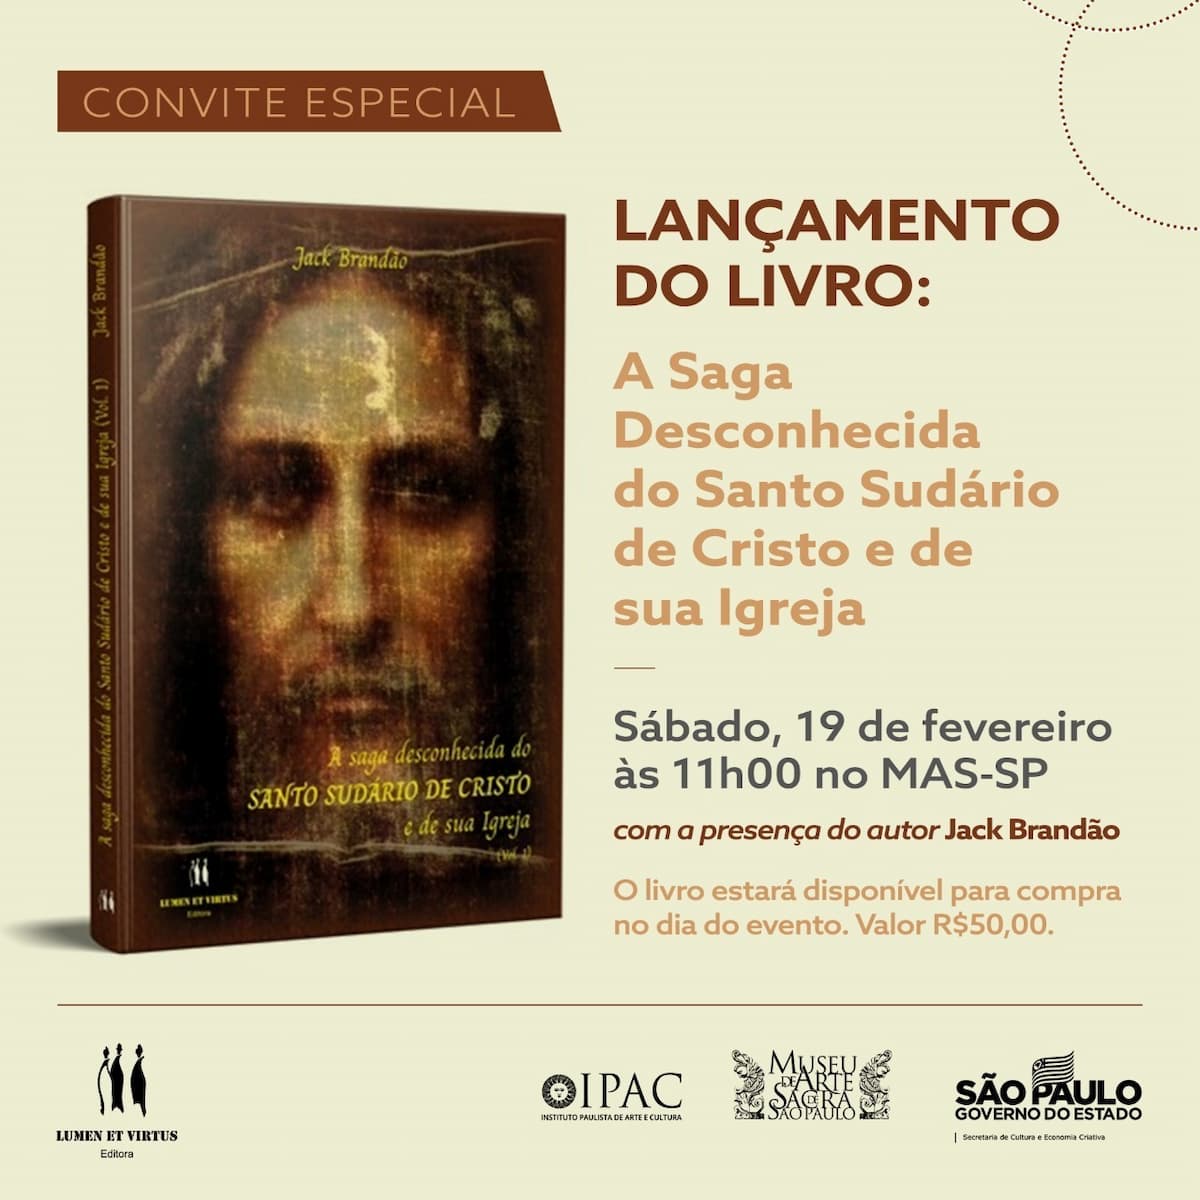 Livro "A saga desconhecida do SUDÁRIO DE CRISTO e de sua Igreja", 书 - 封面, 邀请. 泄露.